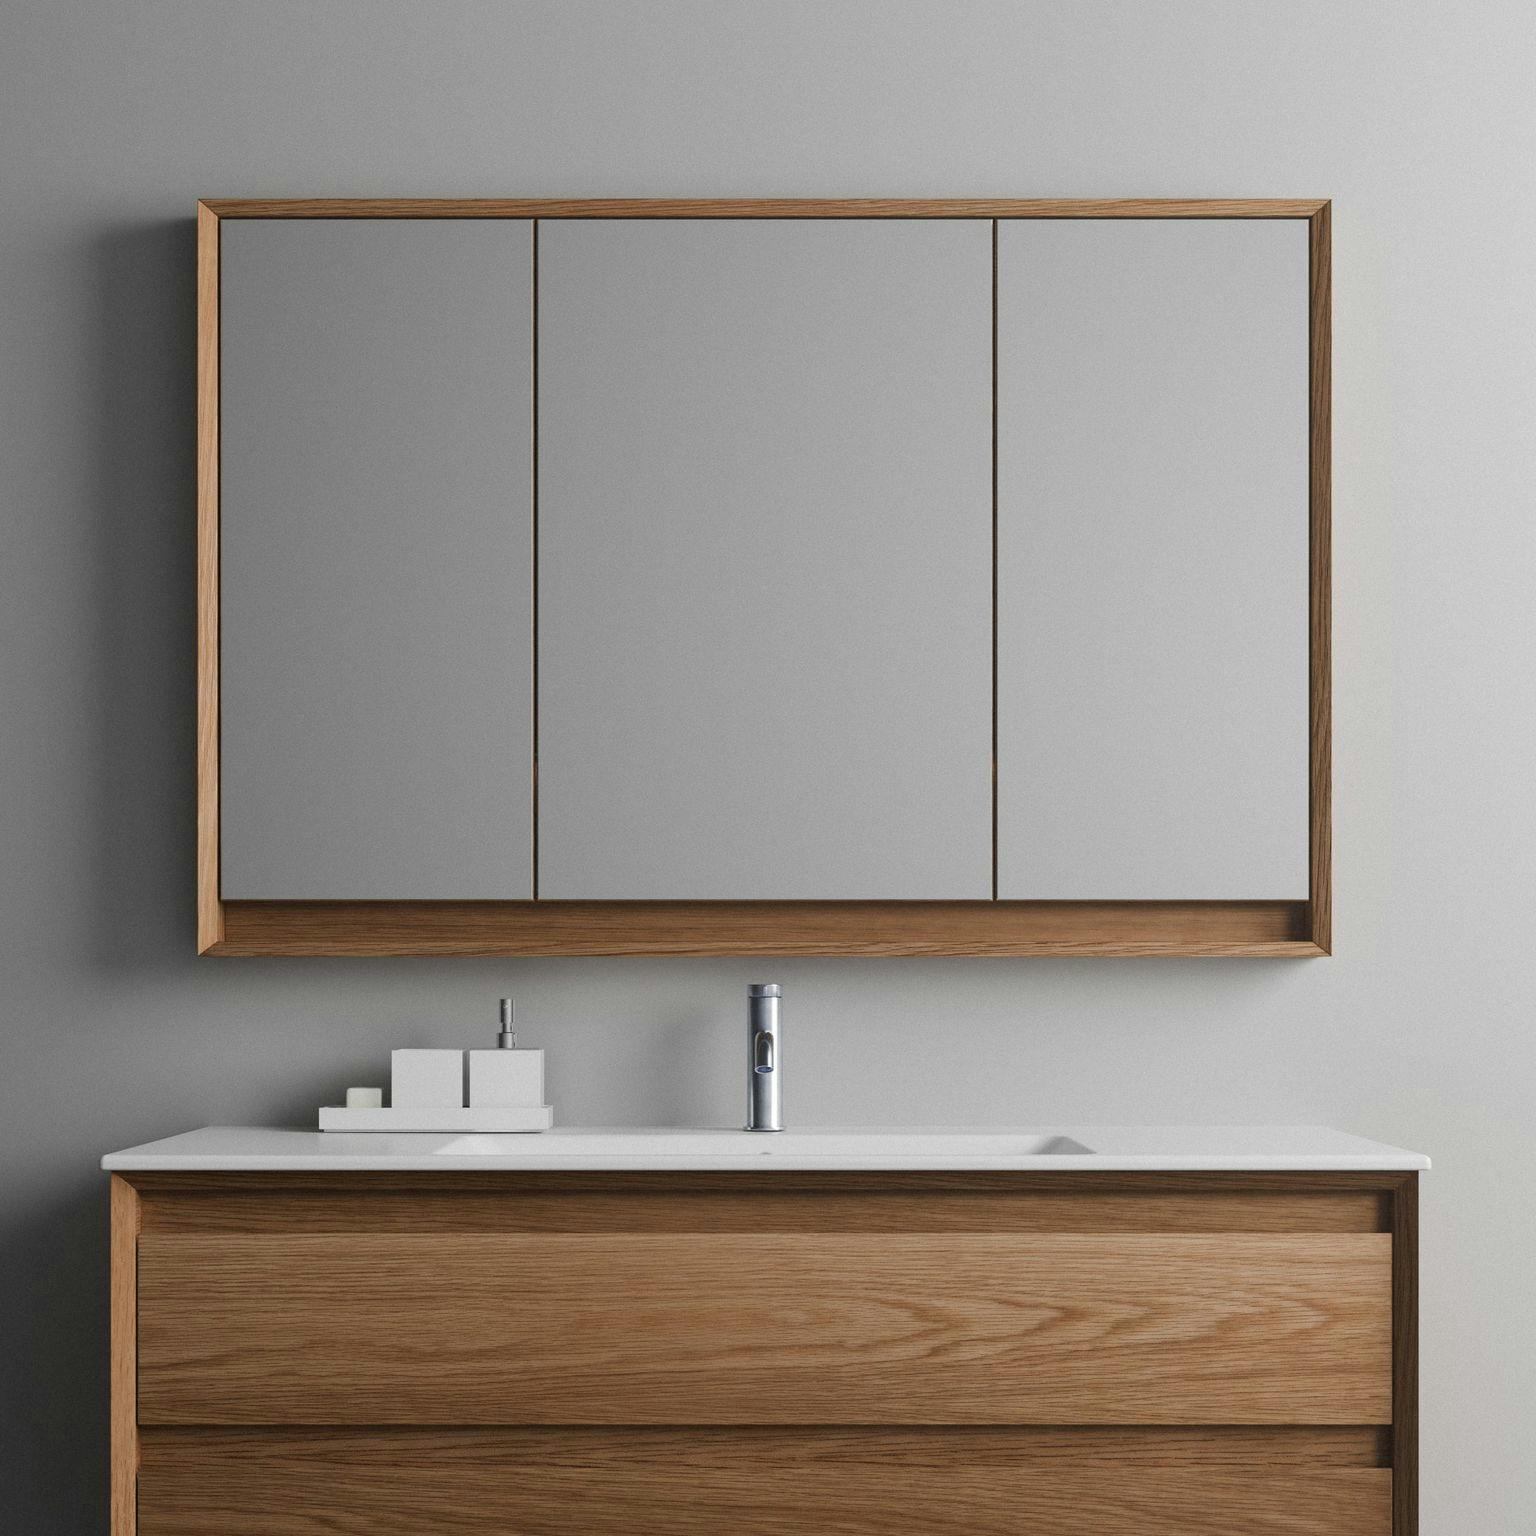 Loop Mirror Cabinets